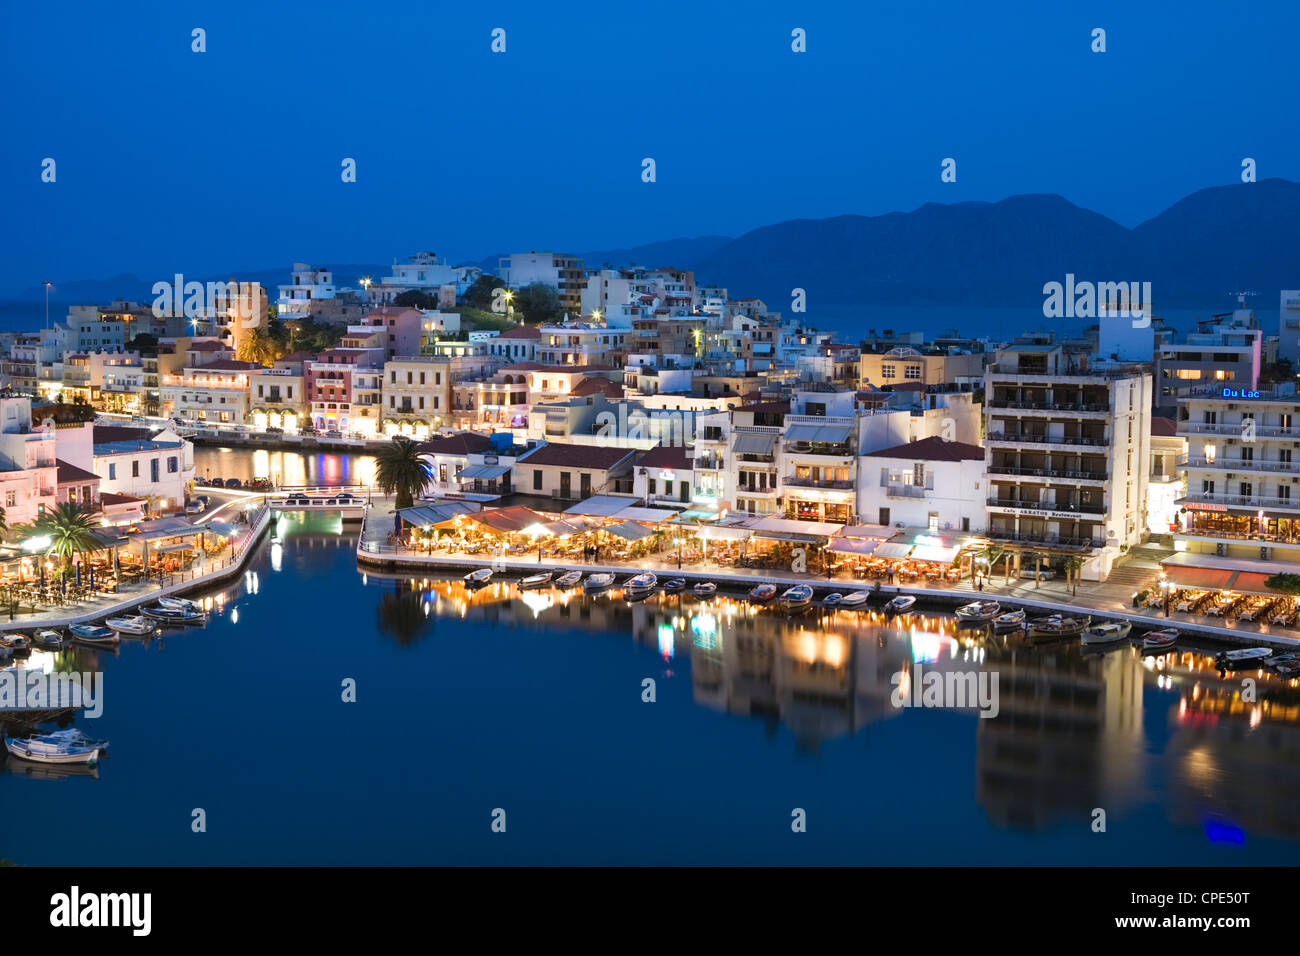 Vue sur port et restaurants au crépuscule, Ayios Nikolaos, λασίθι, Crète, îles grecques, Grèce, Europe Banque D'Images